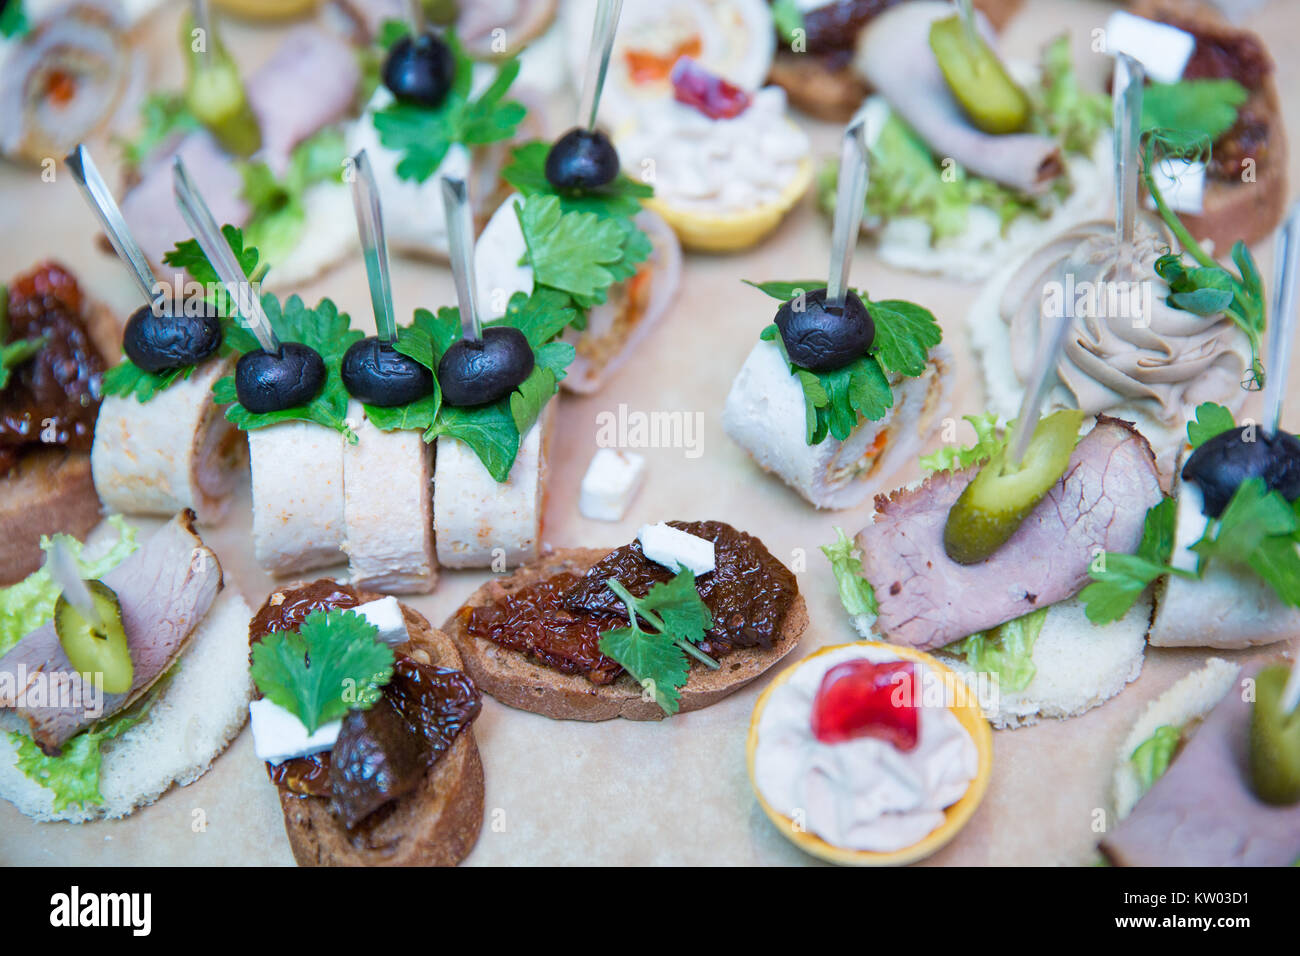 Lecker gesund canape Snacks close-up, Oliven mit Fleisch, Pickles bei der Hochzeit Empfang, Restaurant Gastronomie Konzept Stockfoto